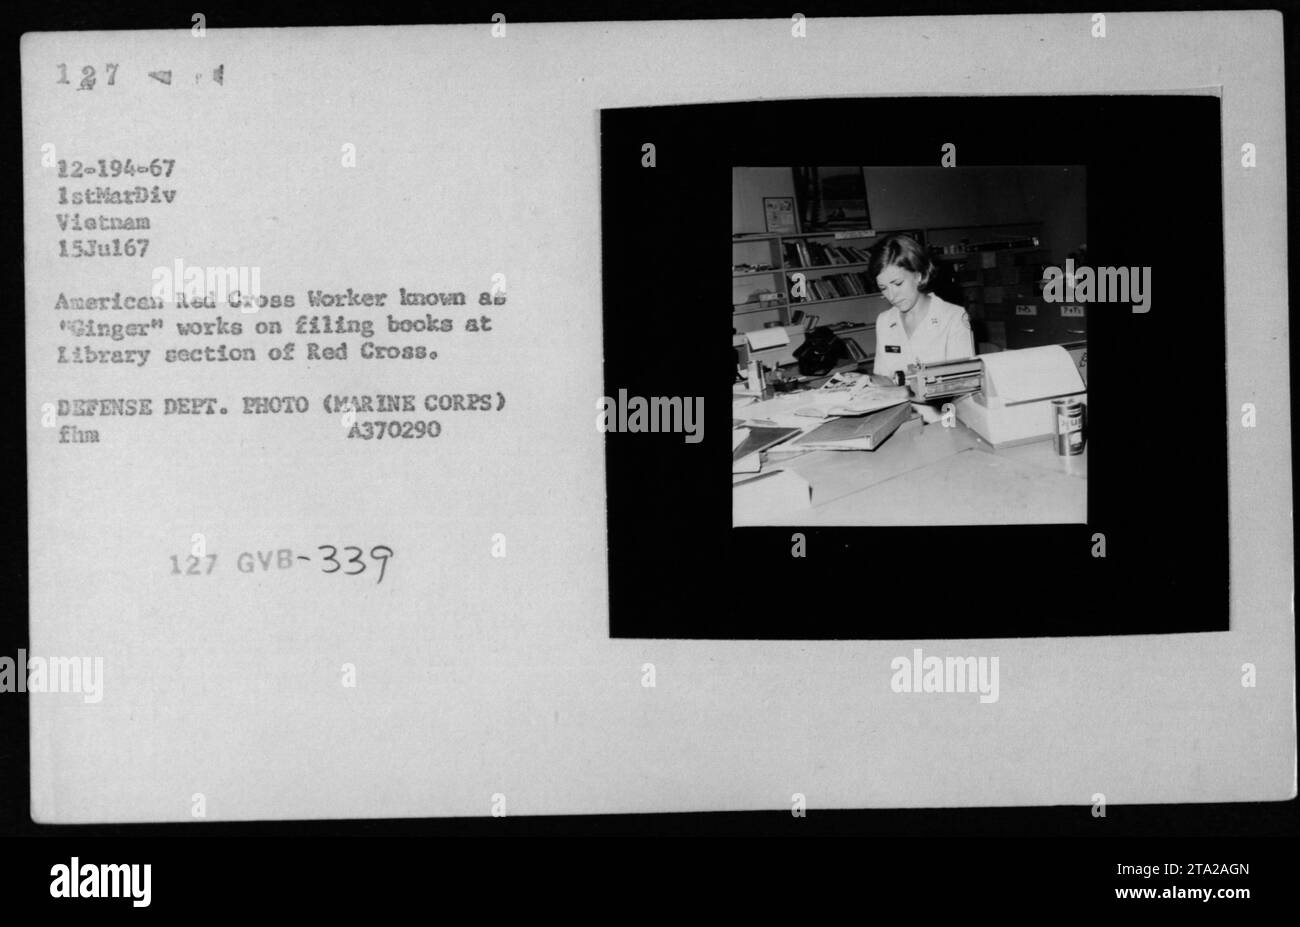 Travailleur de la Croix-Rouge américaine connu sous le nom de « gingembre » classant des livres à la section bibliothèque de la Croix-Rouge au Vietnam. Cette photo a été prise le 15 juillet 1967 et fait partie des activités de l'USO et de la Croix-Rouge pendant la guerre du Vietnam. Photo du ministère de la Défense. Numéro de référence : A370290. Banque D'Images